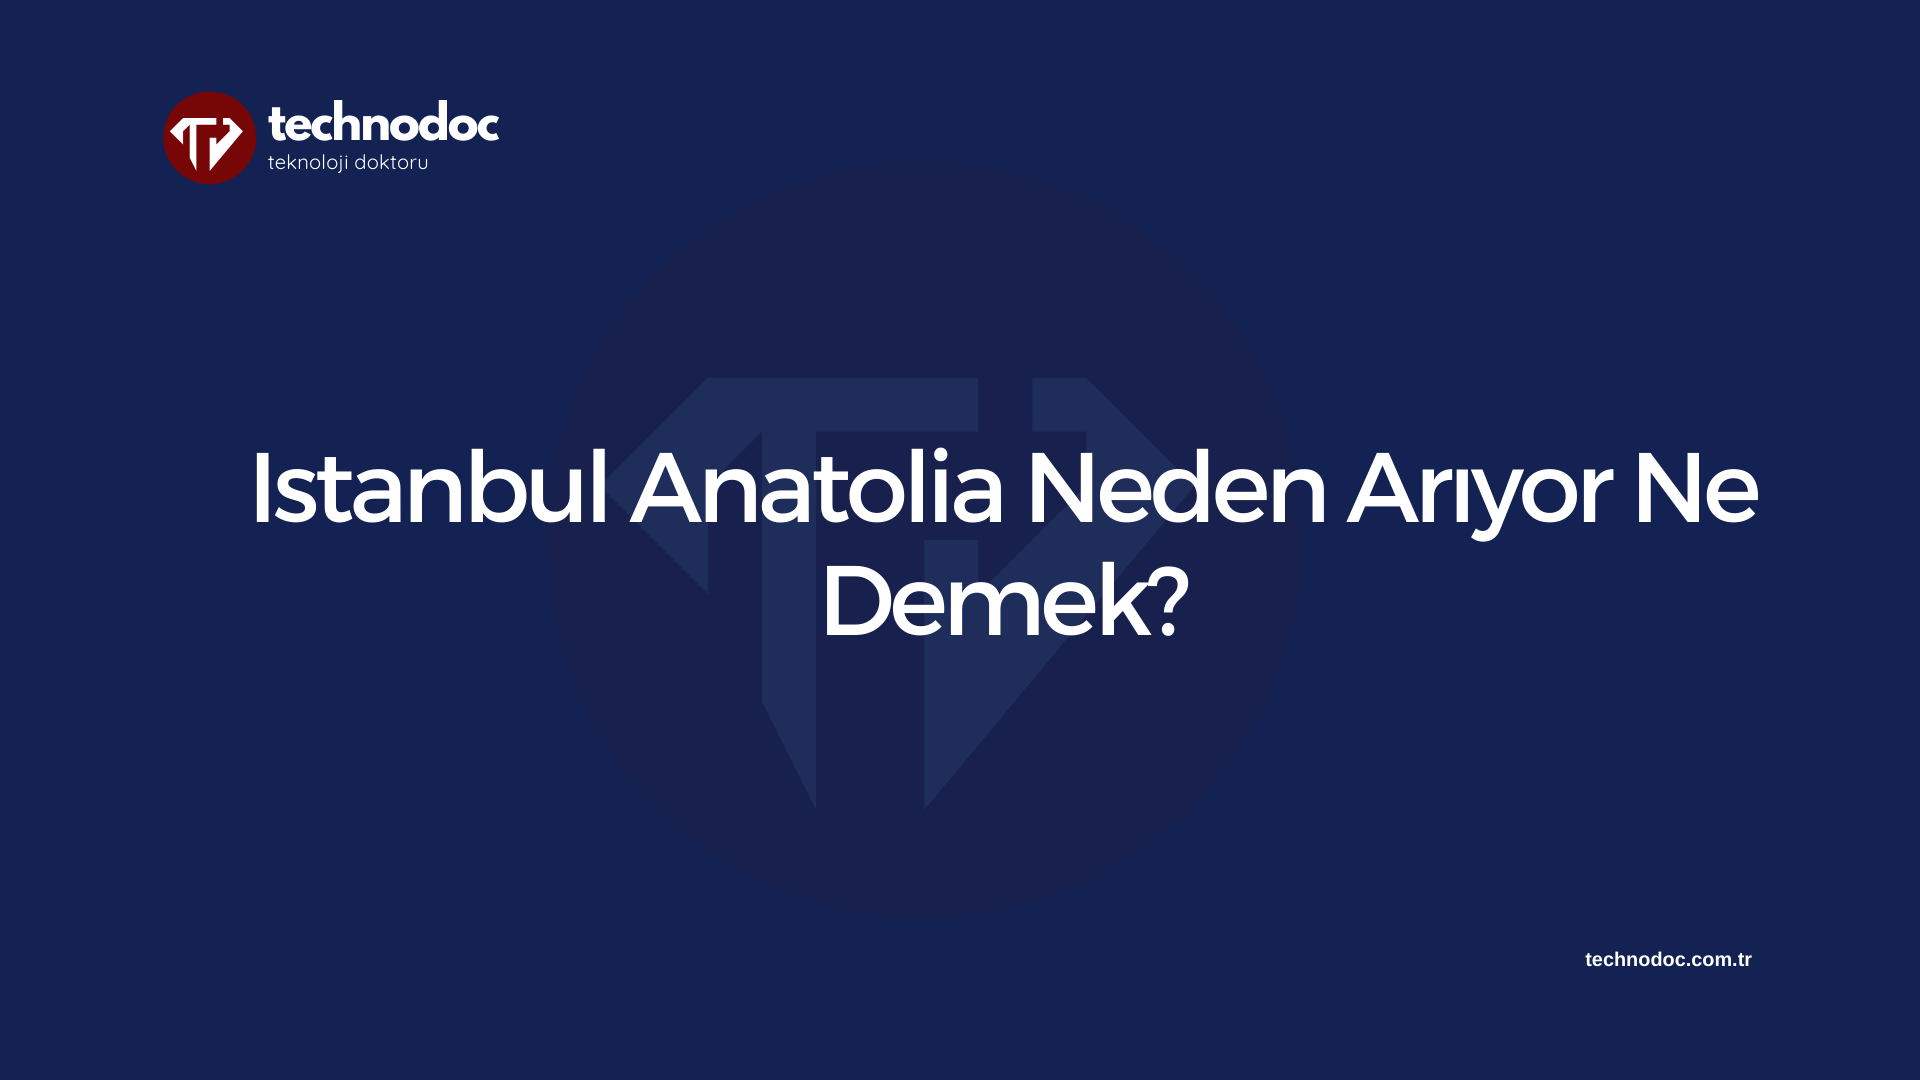 Istanbul Anatolia Neden Arıyor Ne Demek?